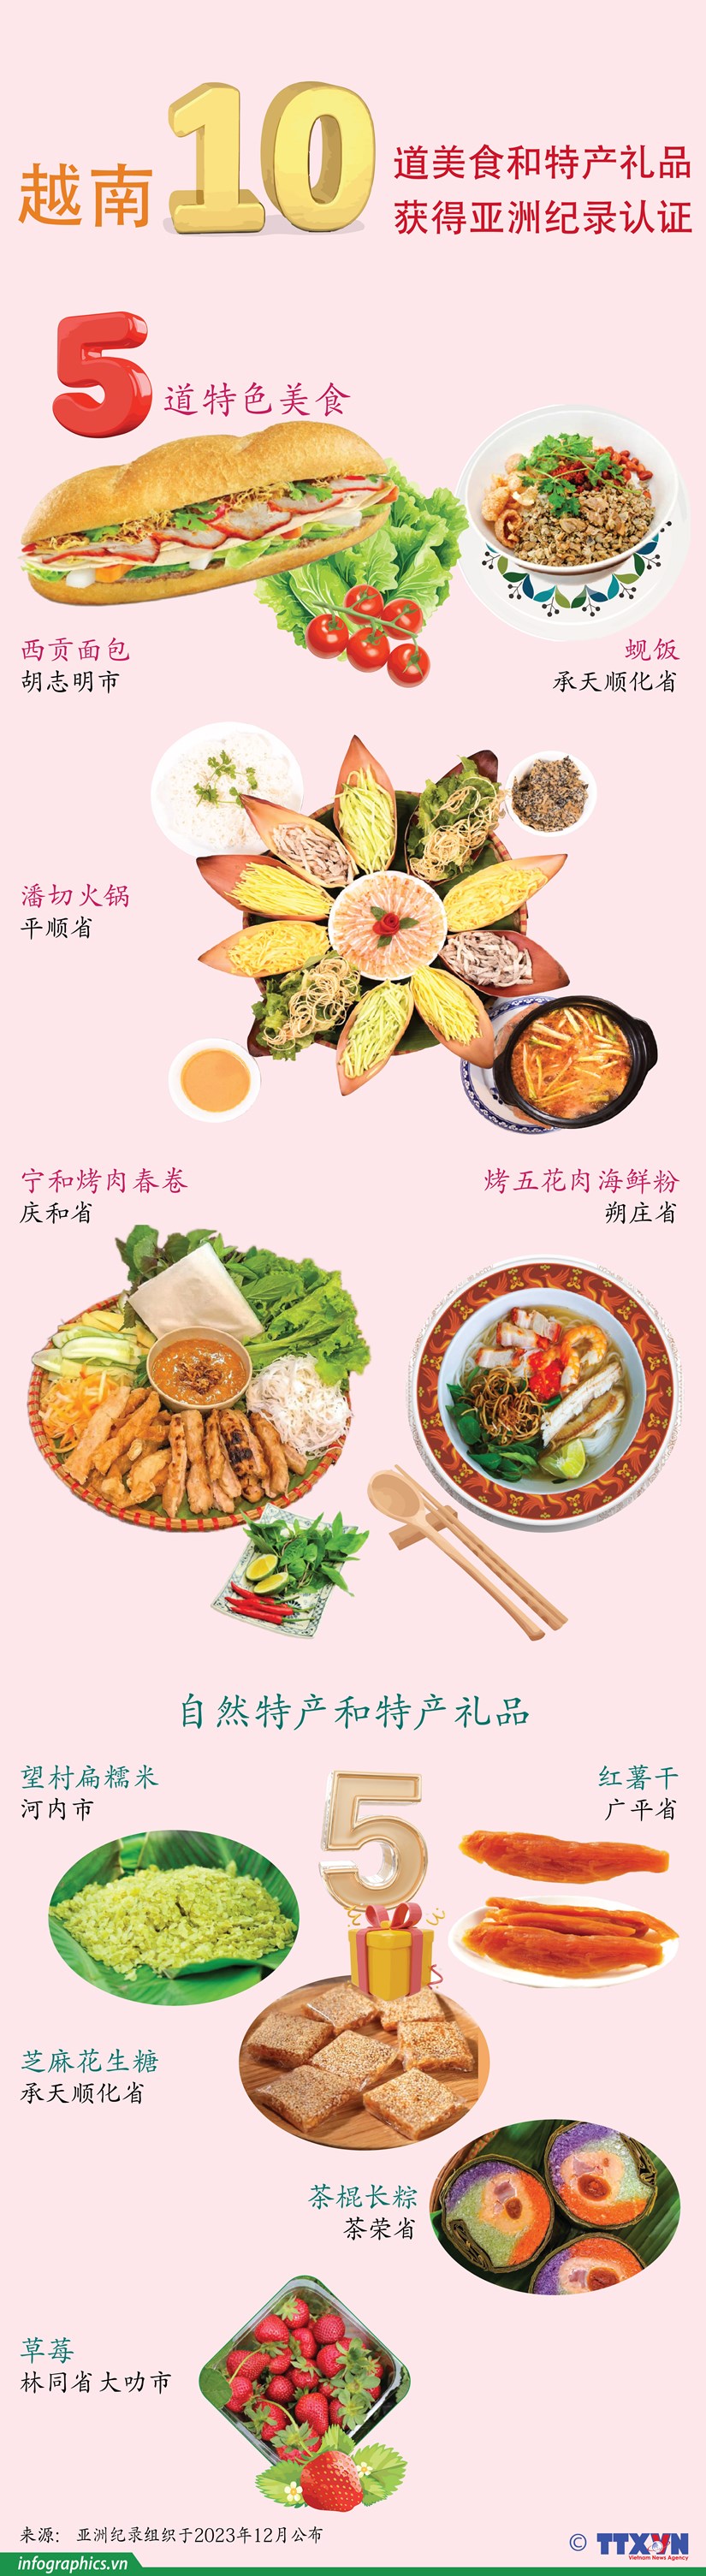 图表新闻：越南10道美食和特产礼品获得亚洲纪录认证 hinh anh 1